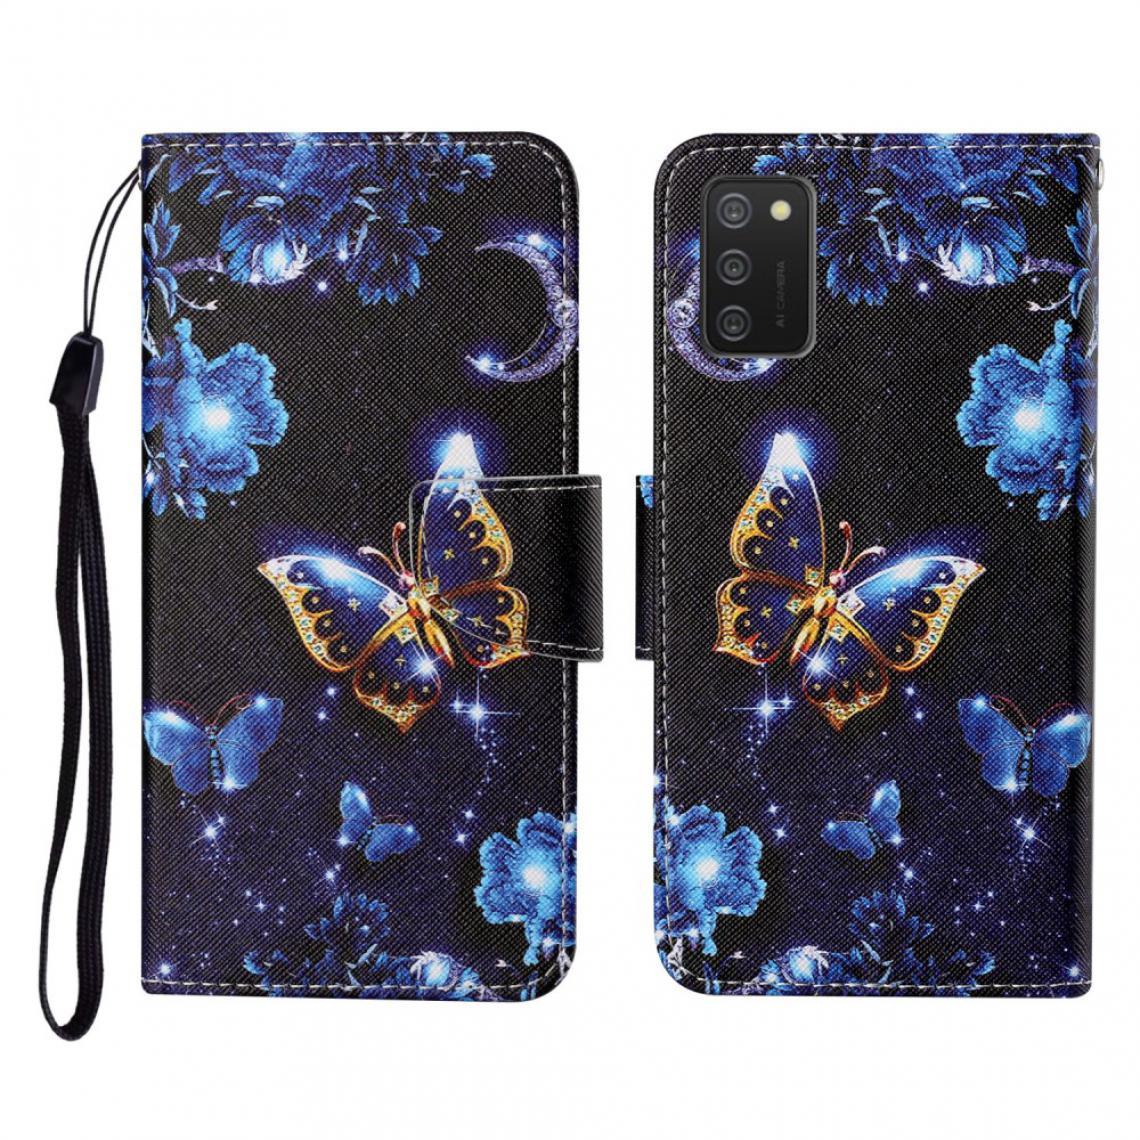 Other - Etui en PU Impression de motifs de conception (164,2 x 75,9 x 9,1 mm) avec support et sangle papillon pour votre Samsung Galaxy A02s - Coque, étui smartphone